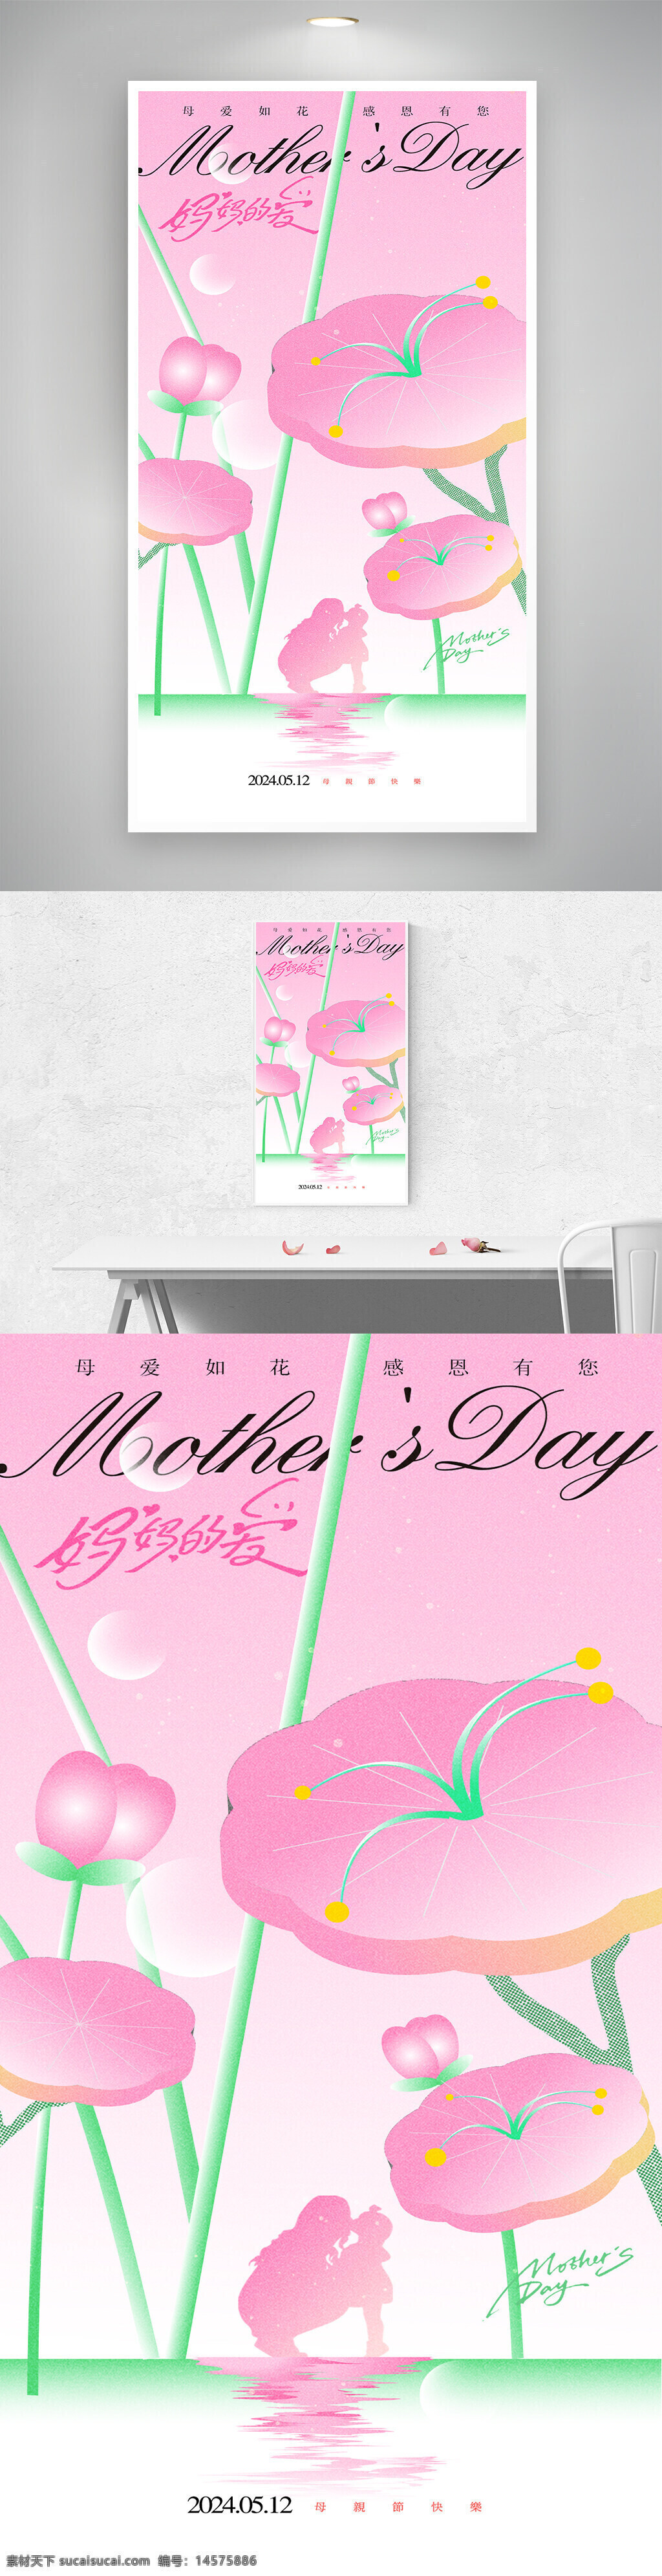 母亲节促销 母亲节宣传单 母亲节活动 妈妈节日快乐 感恩母亲节 母亲节 母亲节海报 母亲节模板 母亲节展板 母亲节设计